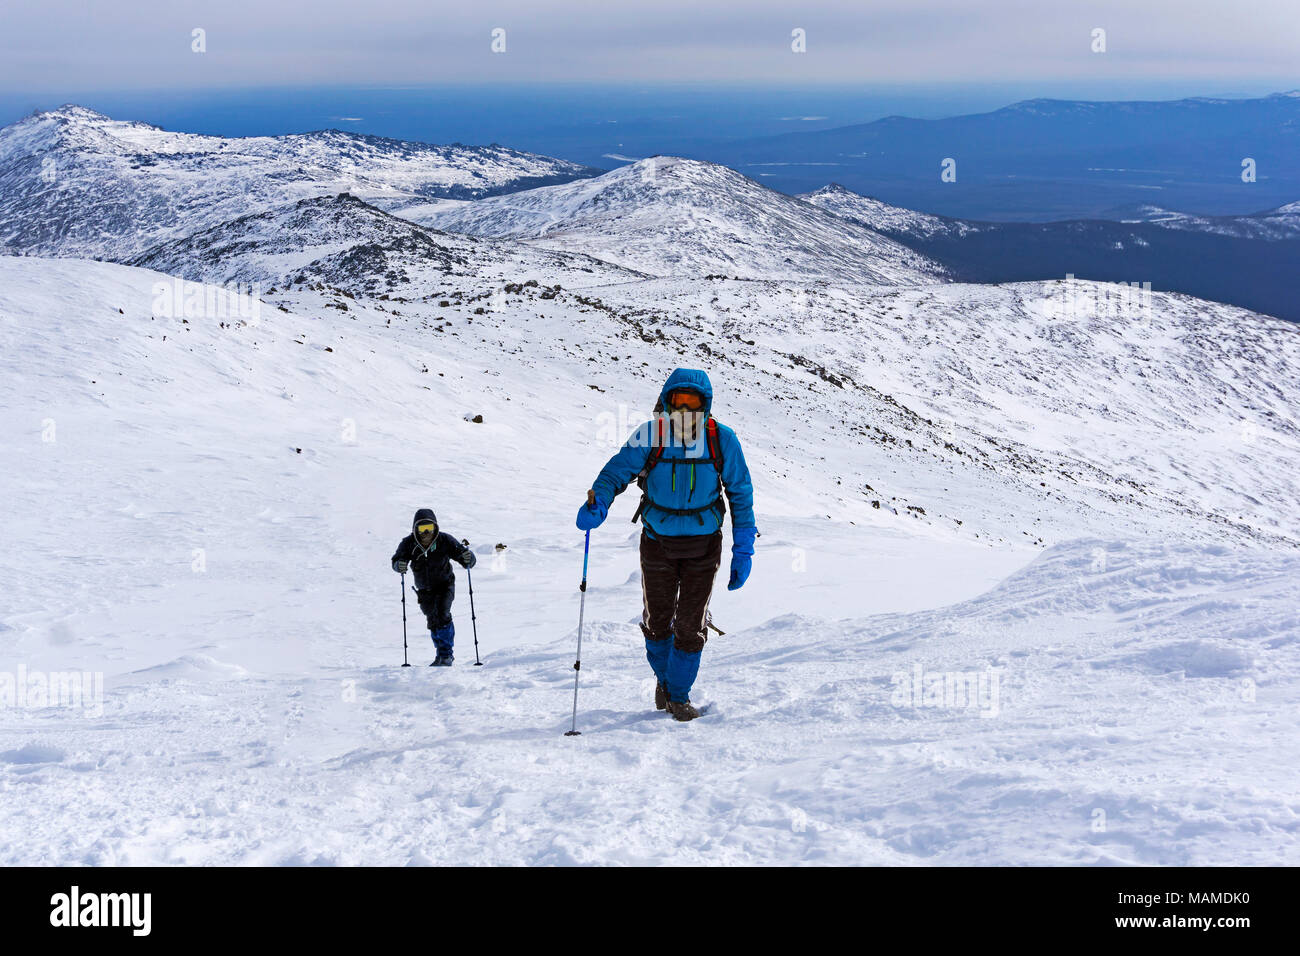 Deux alpinistes remonte la pente de montagne couverte de neige Banque D'Images